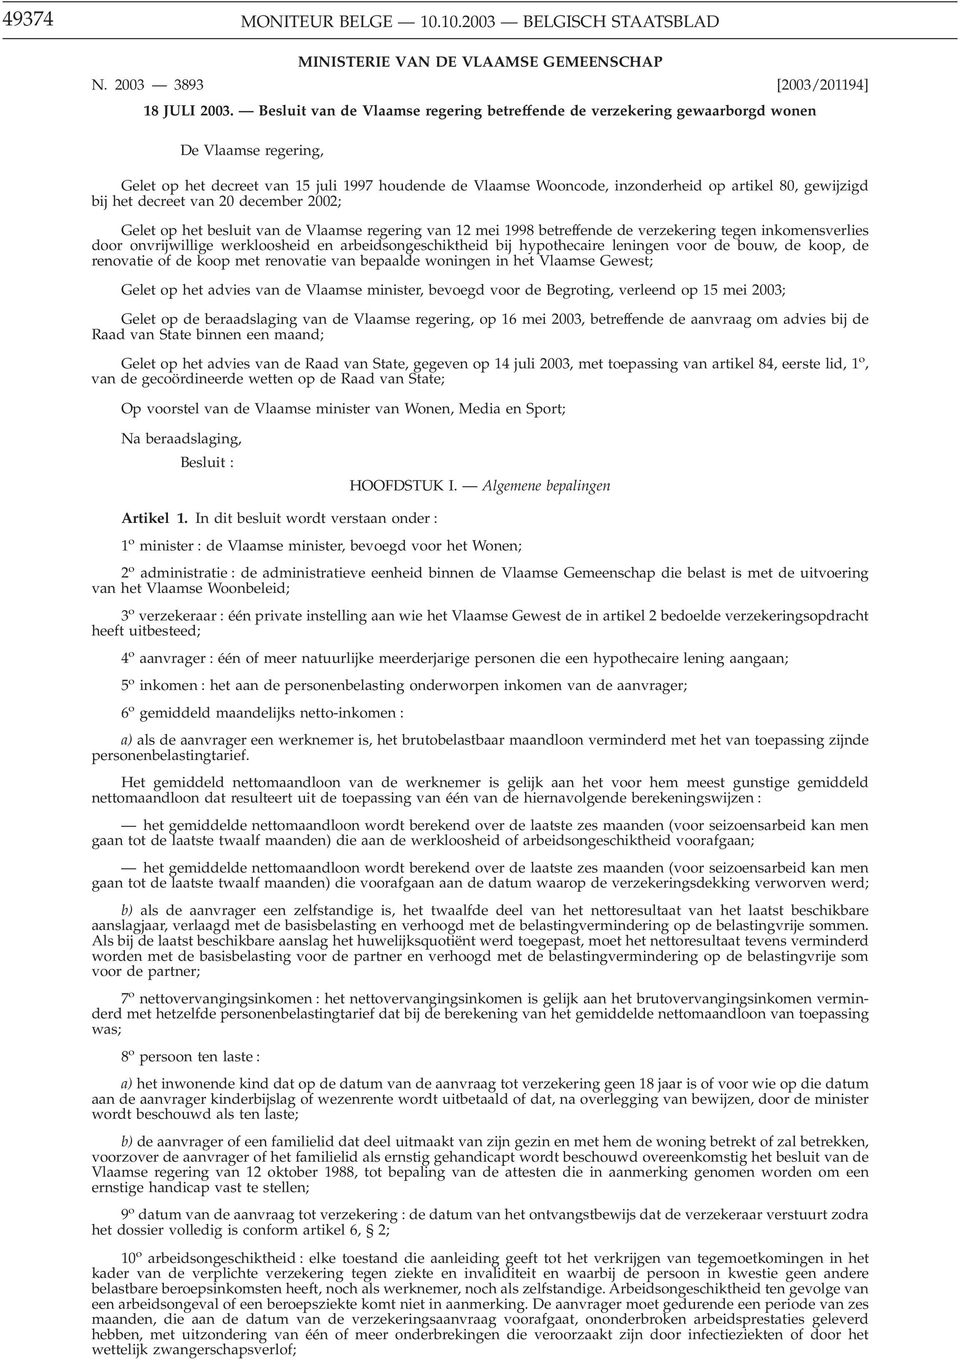 gewijzigd bij het decreet van 20 december 2002; Gelet op het besluit van de Vlaamse regering van 12 mei 1998 betreffende de verzekering tegen inkomensverlies door onvrijwillige werkloosheid en